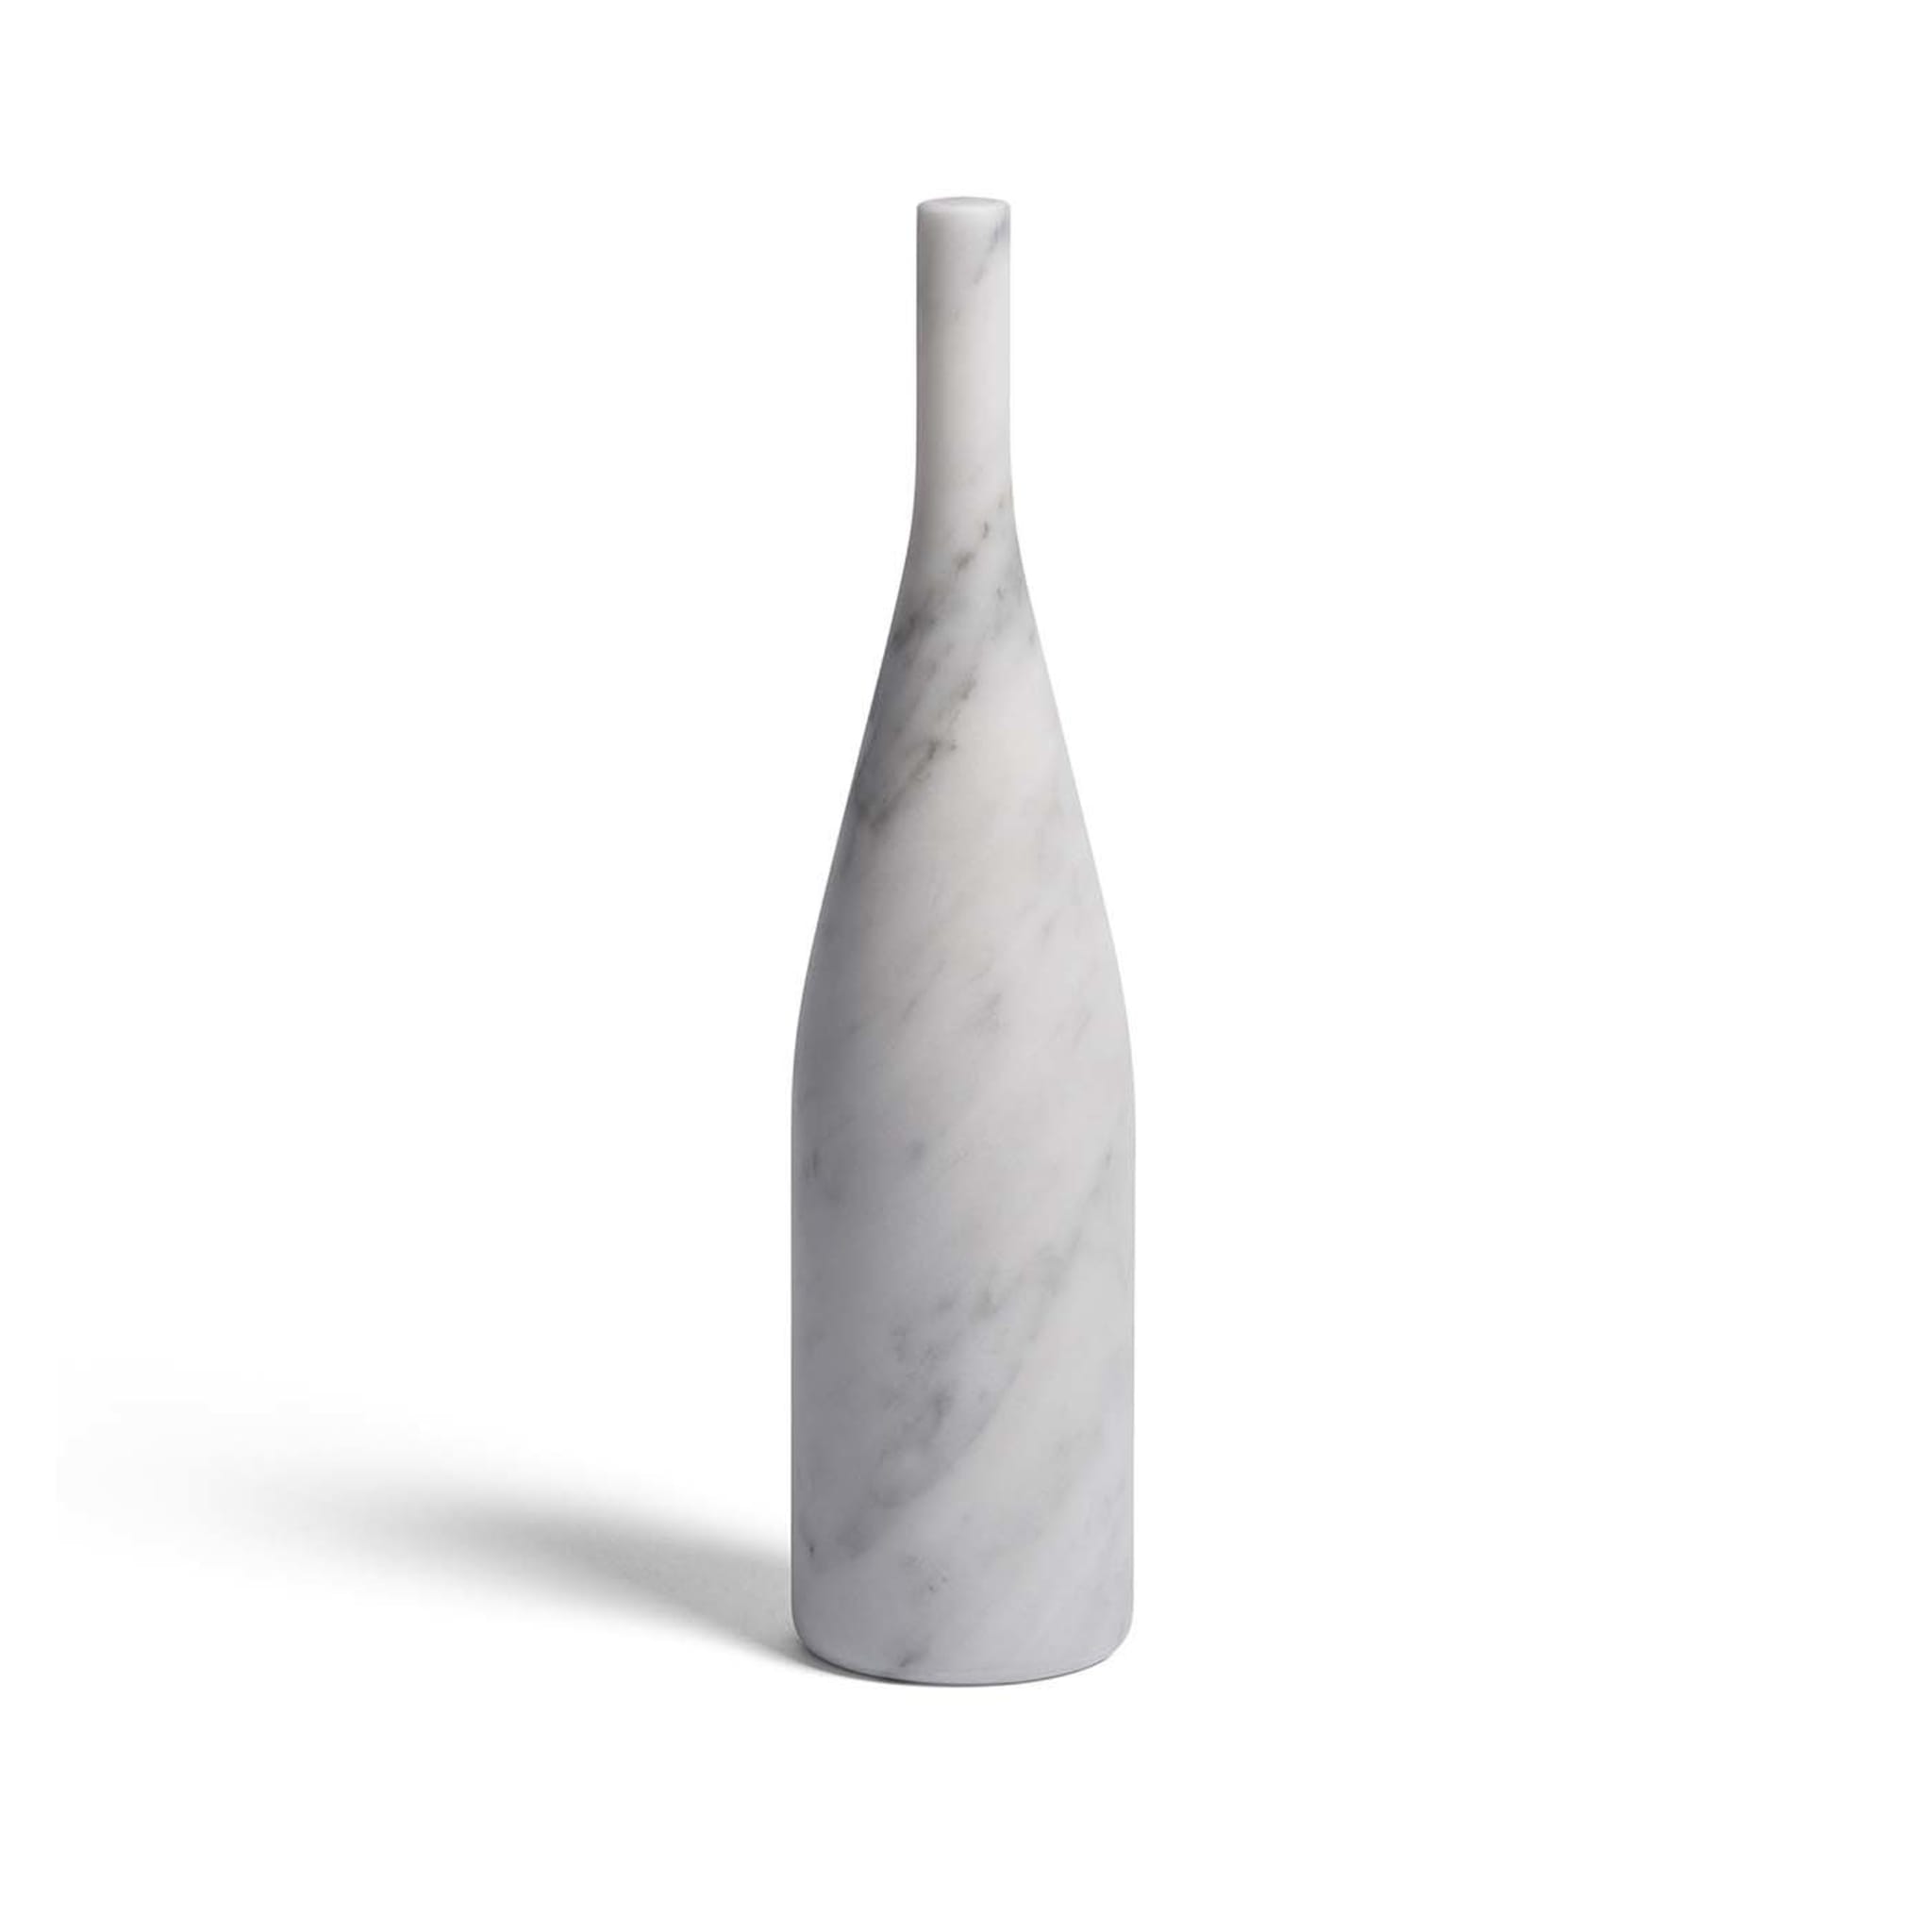 Omaggio a Morandi Sculpture in Bianco Carrara Marble - Alternative view 1